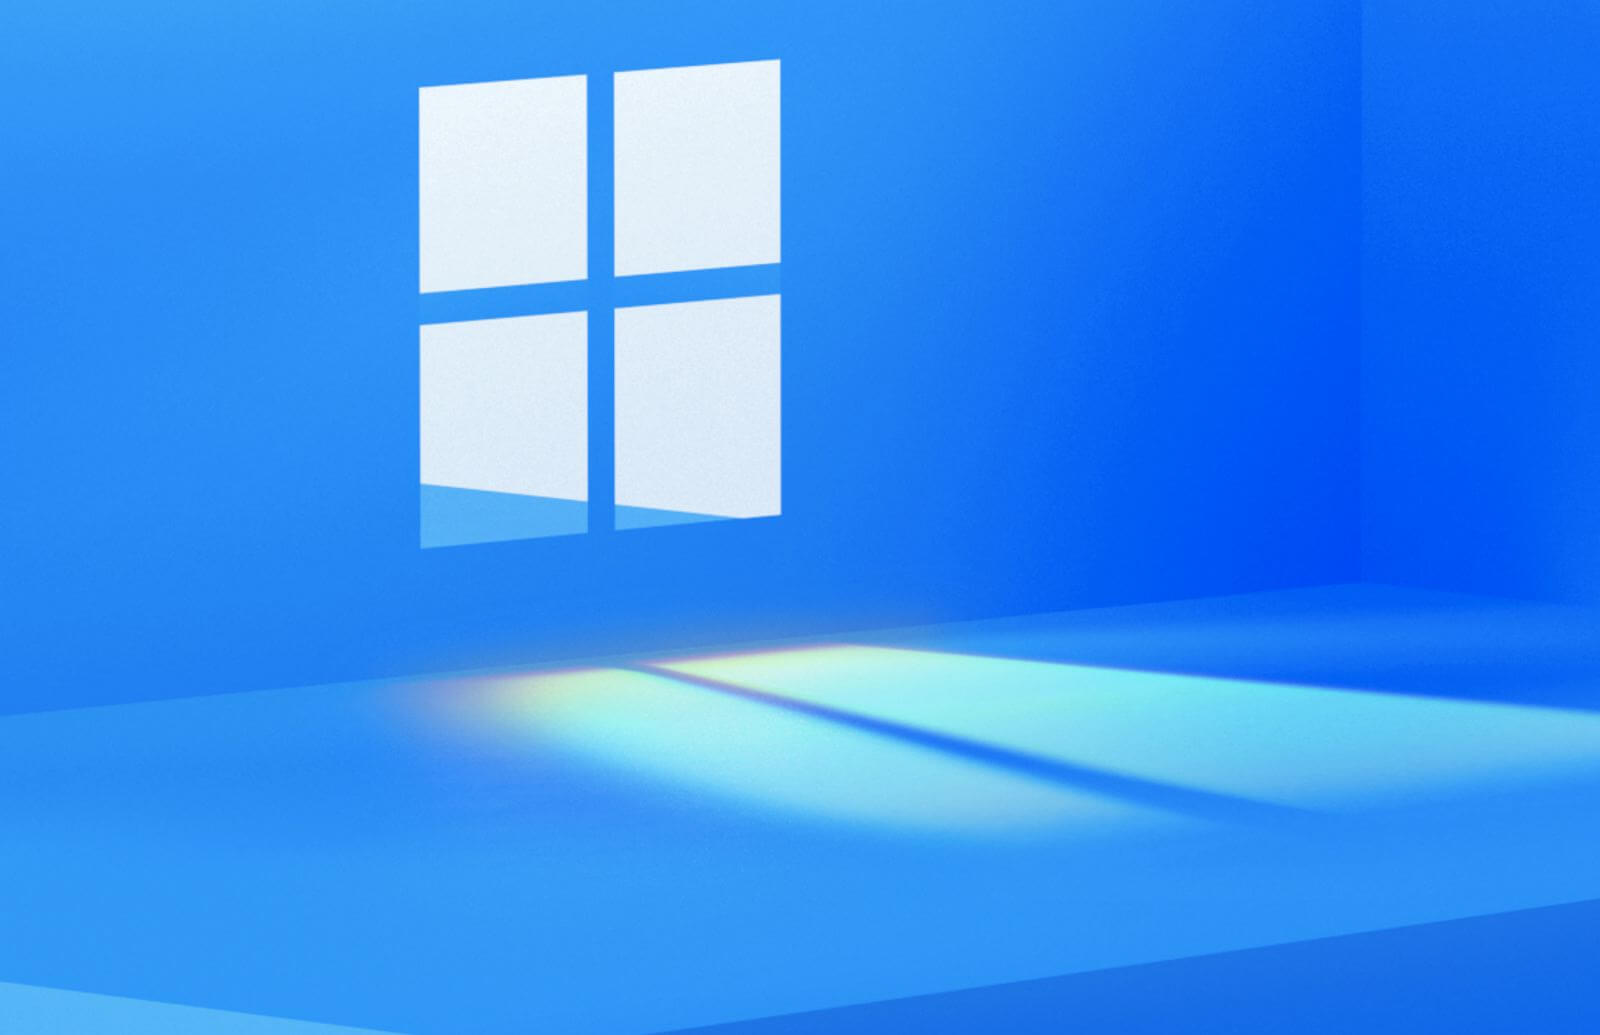 Đã lâu rồi chúng ta không được trải nghiệm hệ điều hành mới của Windows đúng không? Hãy cập nhật ngay với hình nền Windows 11 (Sun Valley) để tạo cảm giác mới lạ và hứng thú trong công việc. Với hình ảnh đẹp mắt này, bạn sẽ cảm thấy rung động và mong muốn trải nghiệm thật sớm chứ?